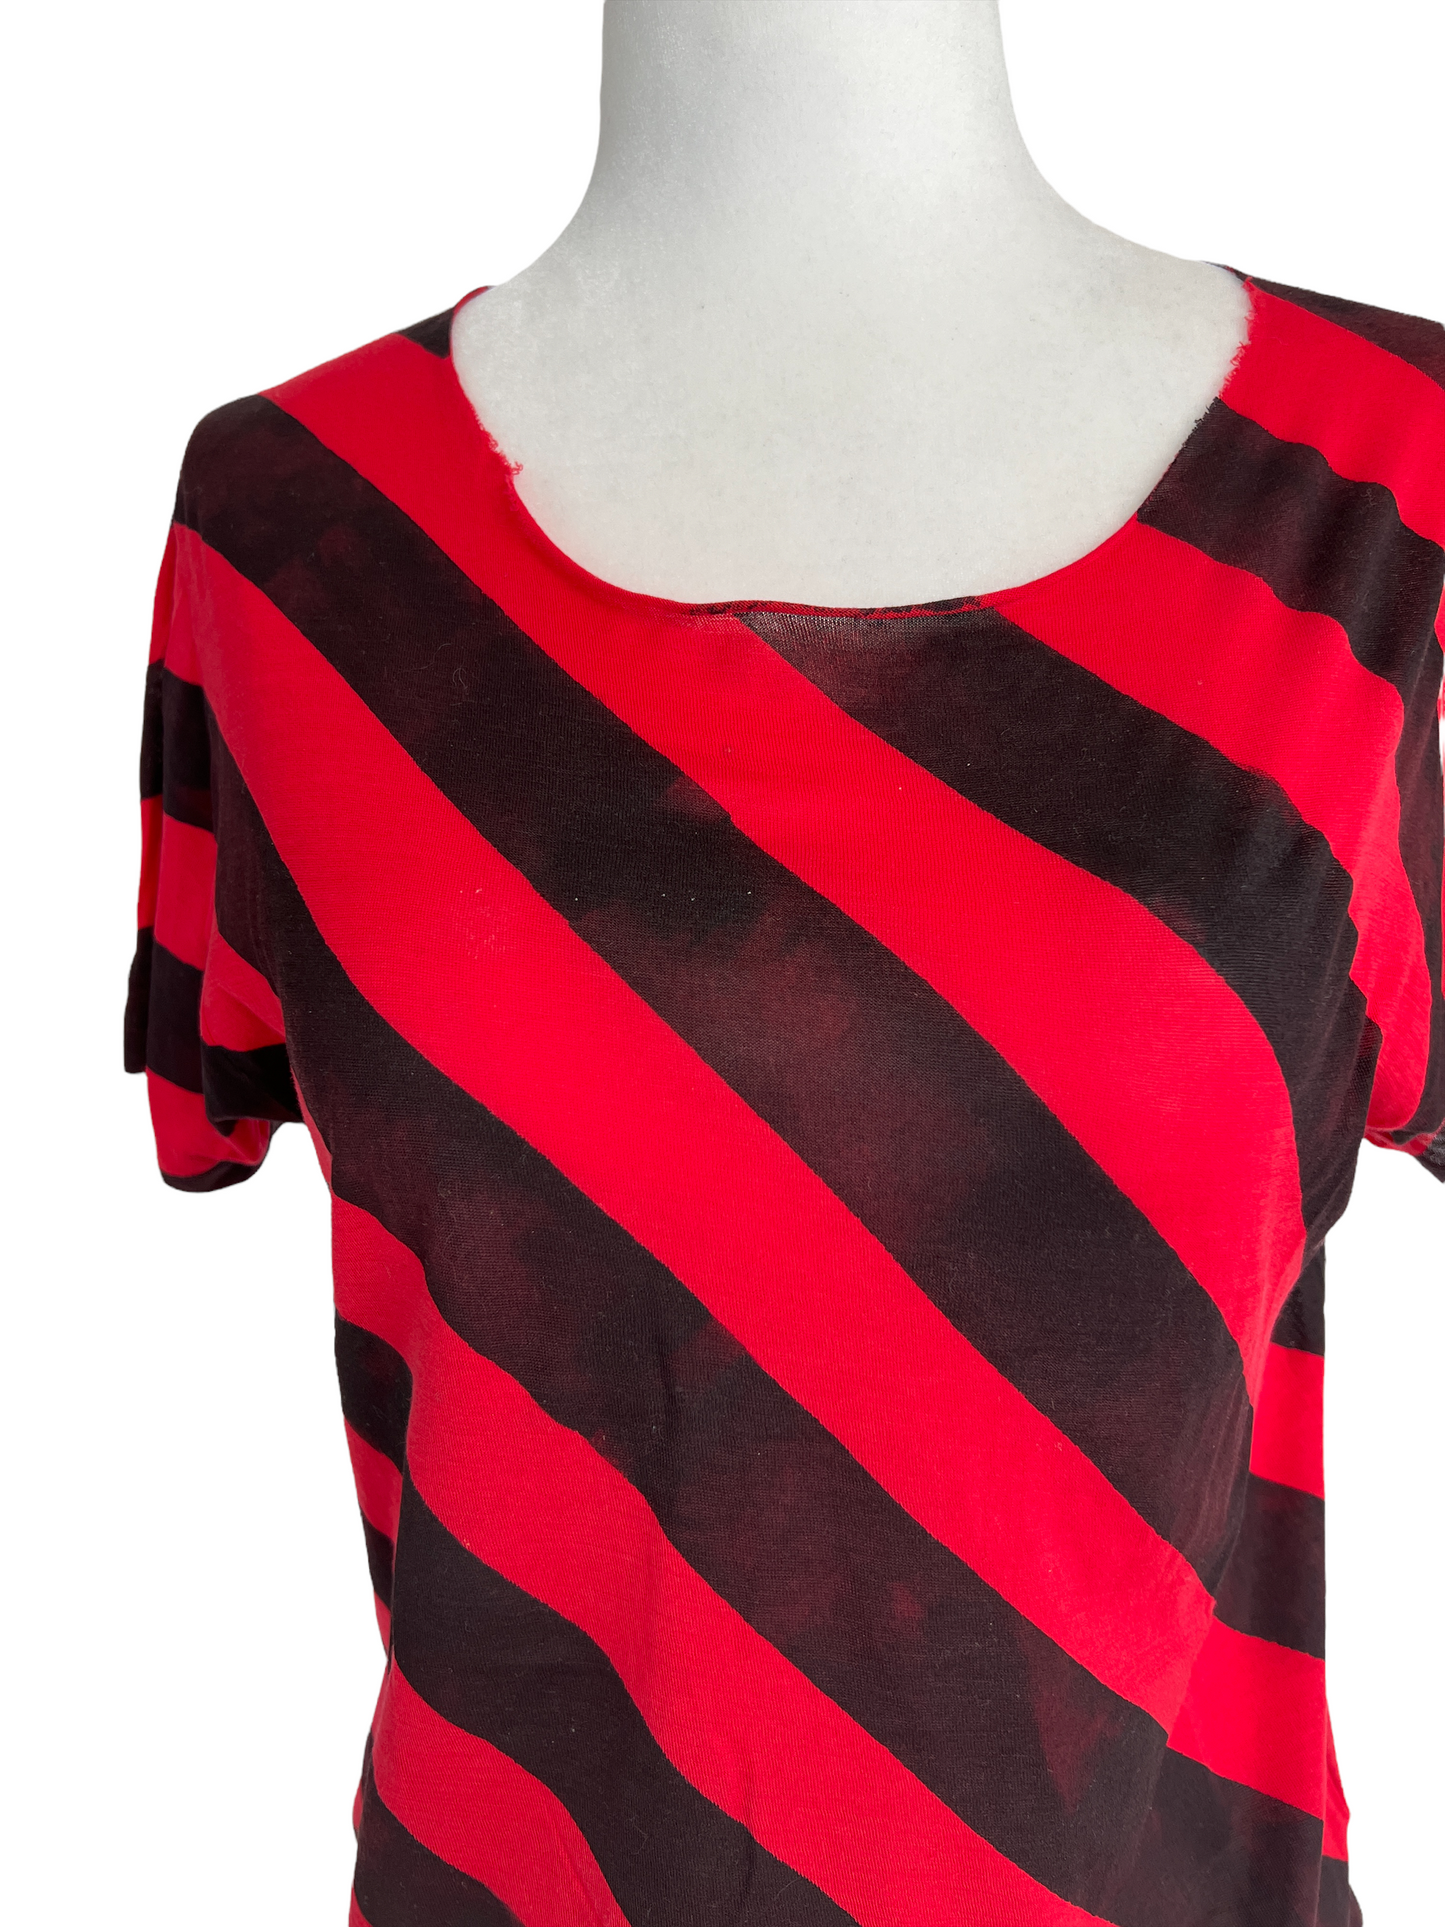 Black & Red Cotton Tshirt - XS